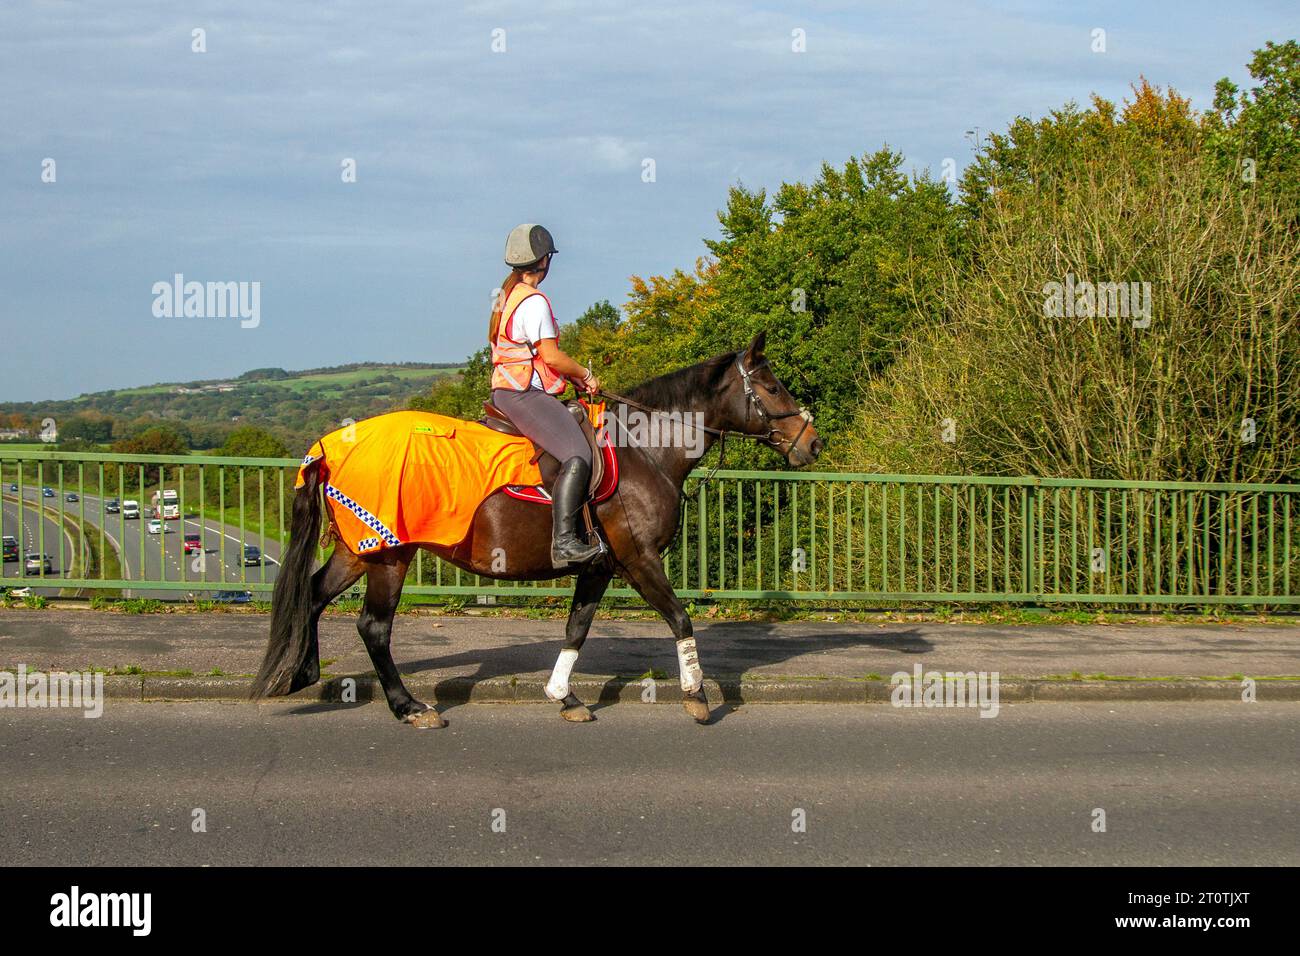 Weibliche Reiterin in orangefarbener Kleidung über Autobahnbrücken Straßenverkehr in Manchester haben britische Pferde das Recht, auf den Straßen zu fahren, und in ihnen waren Pferde- und Pferdekutschen, bevor Autos erfunden wurden. Stockfoto